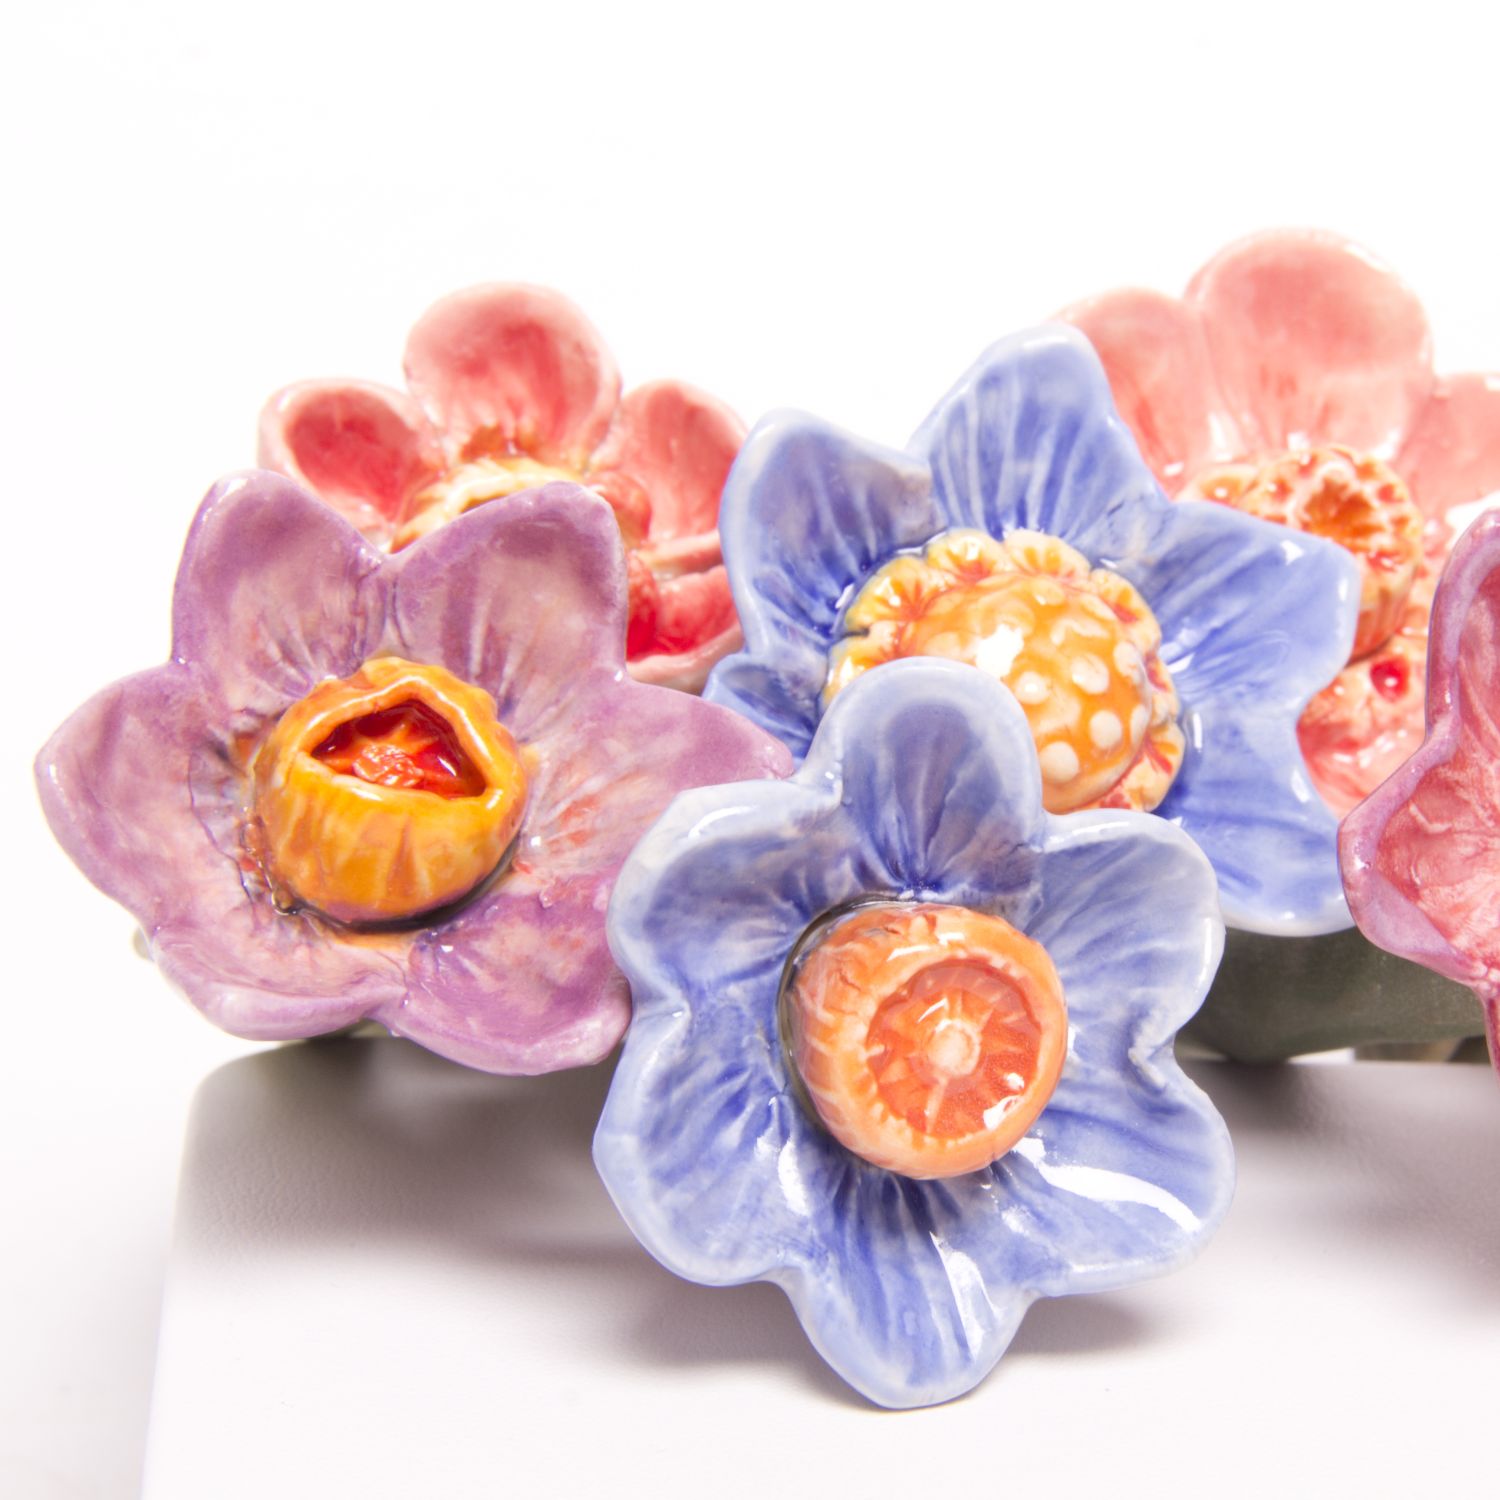 Eekta Trienekens: Narcissus Flowers (Each sold separately) Product Image 3 of 7